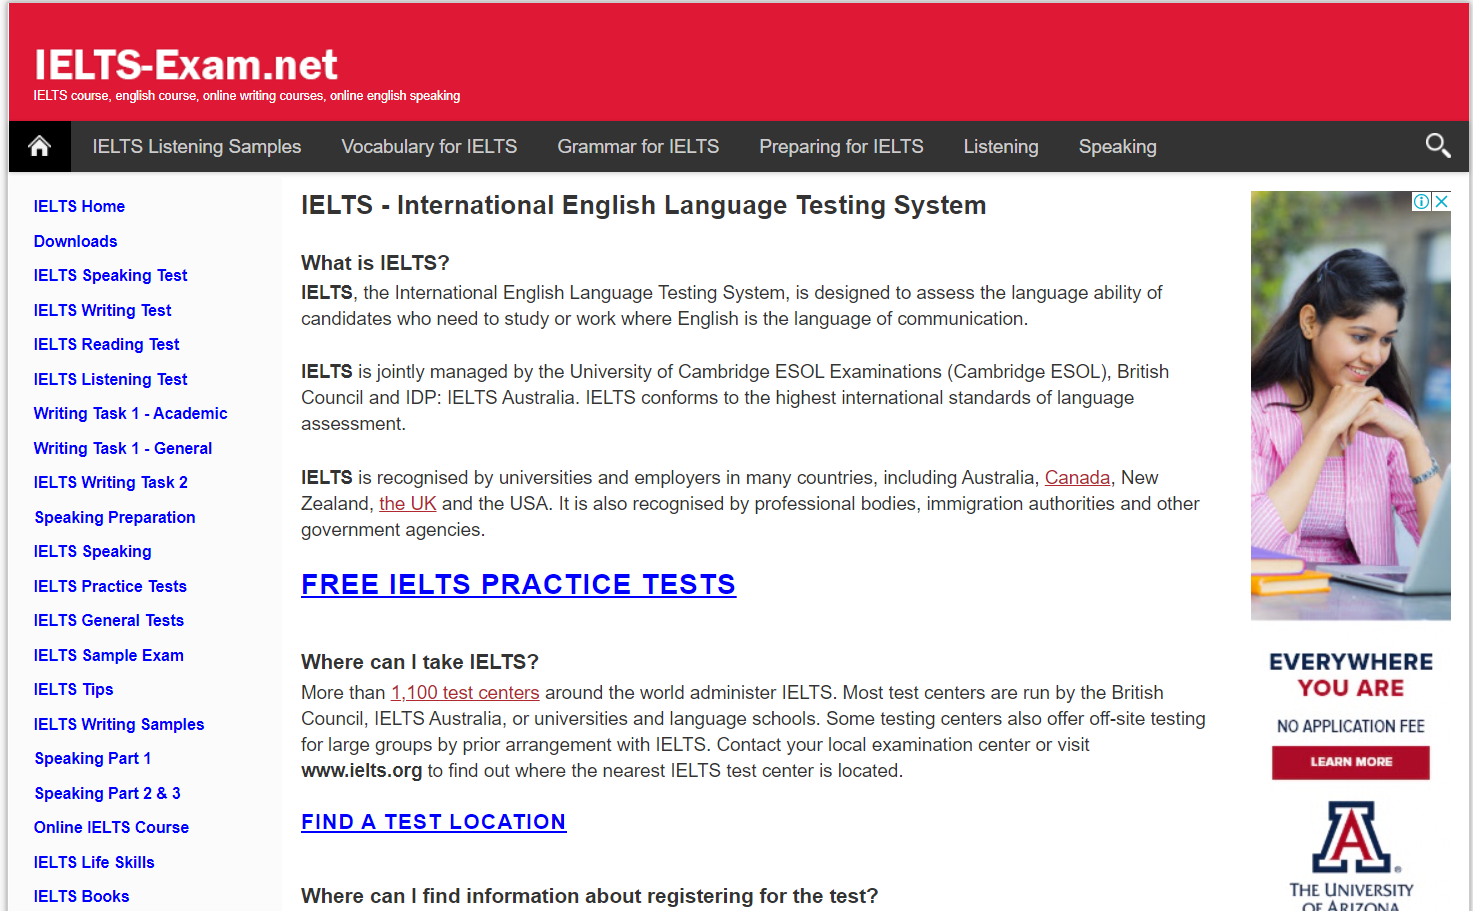 IELTS-Exam.net